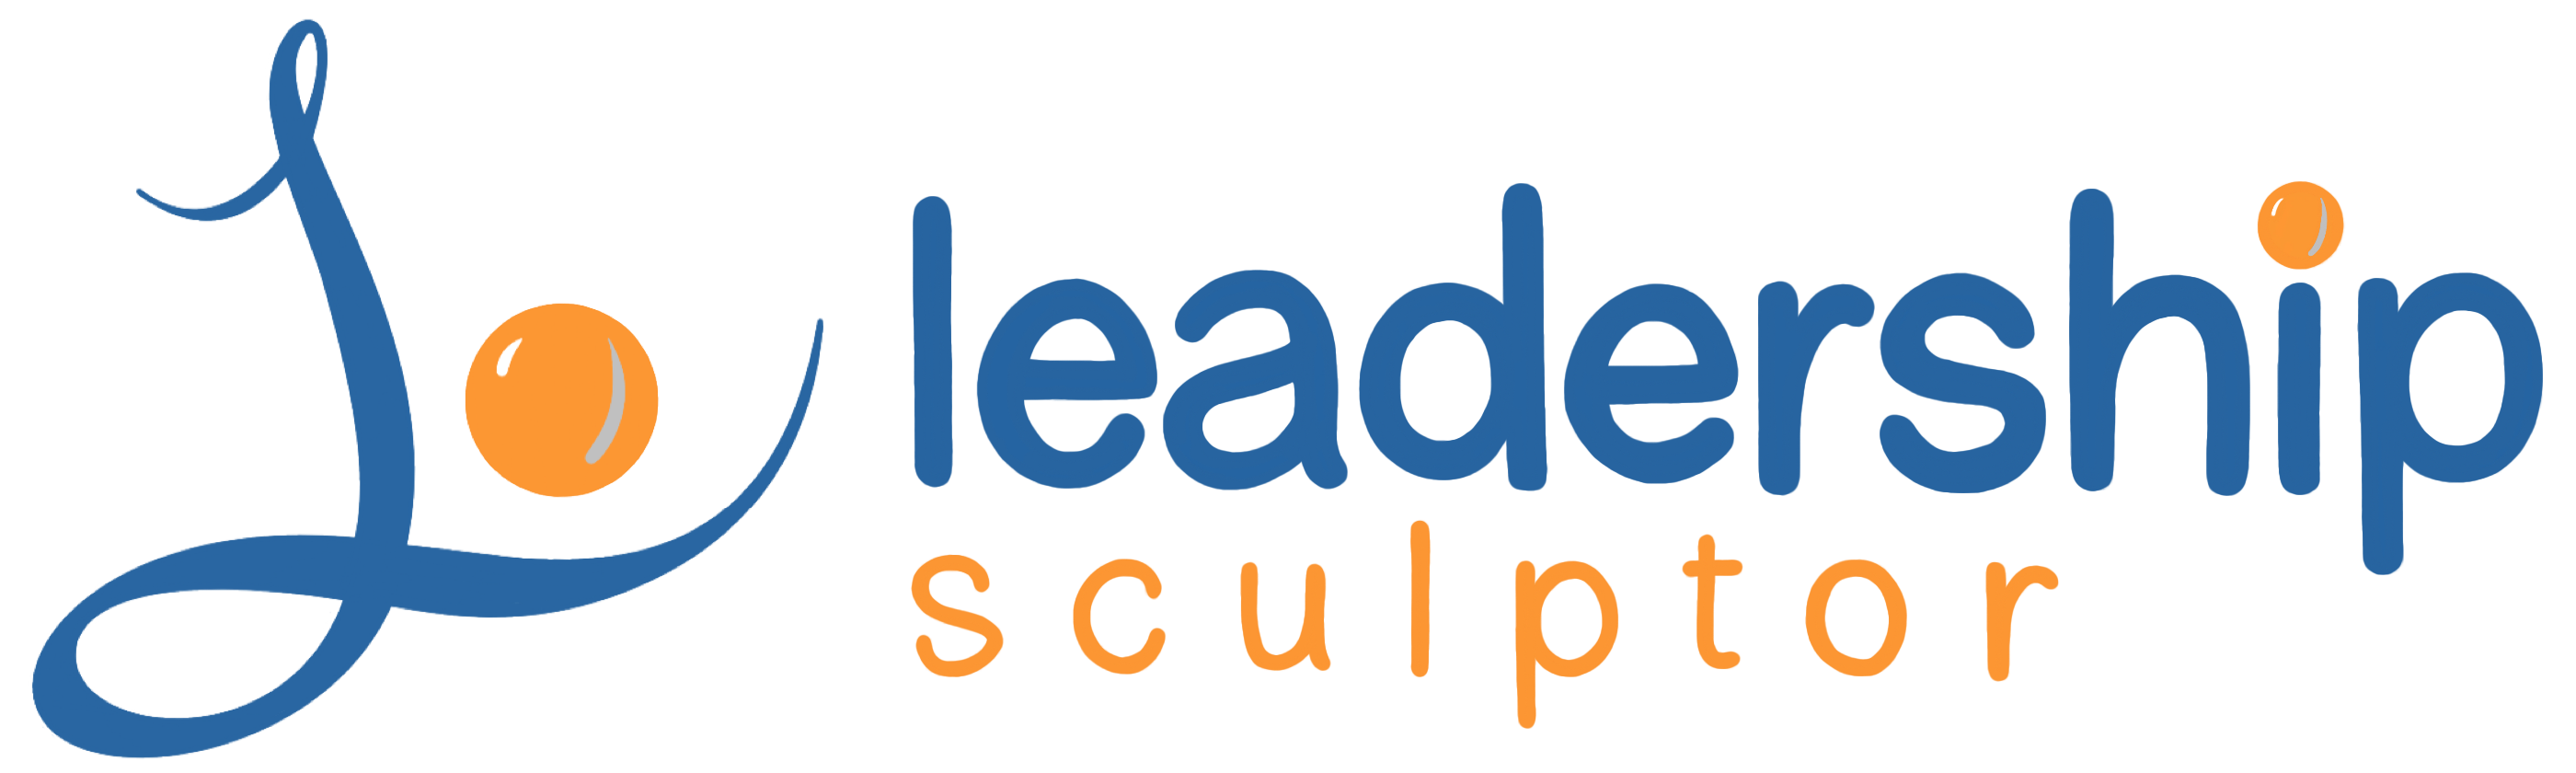 Leadership Sculptor full logo